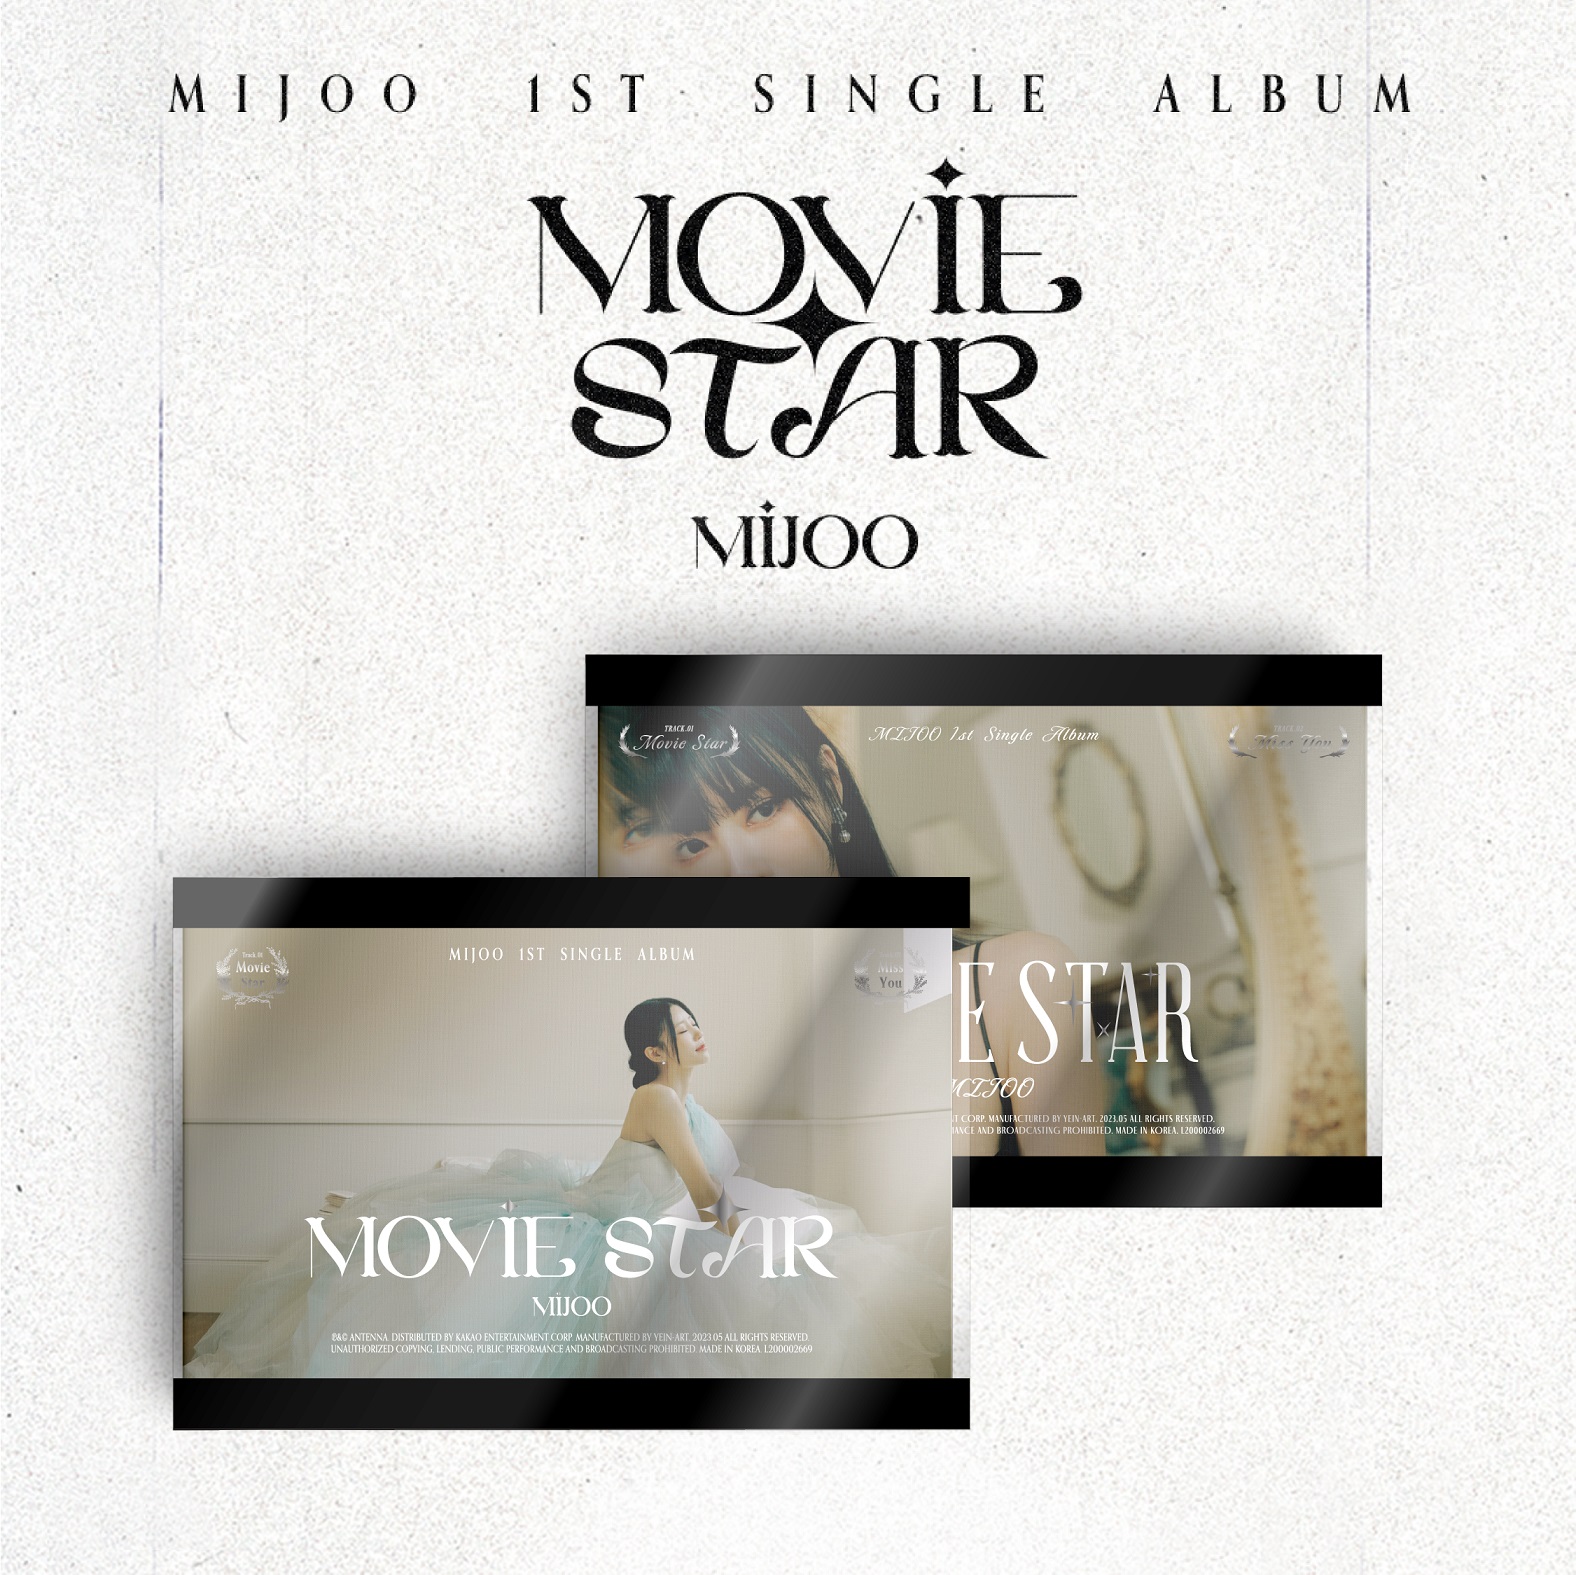 [全款 裸专] [Ktown4u Special Gift] [2CD 套装] MIJOO - 单曲1辑 [Movie Star] (Modern Ver. + Classic Ver.)_NiceToMeetJoo_李美珠